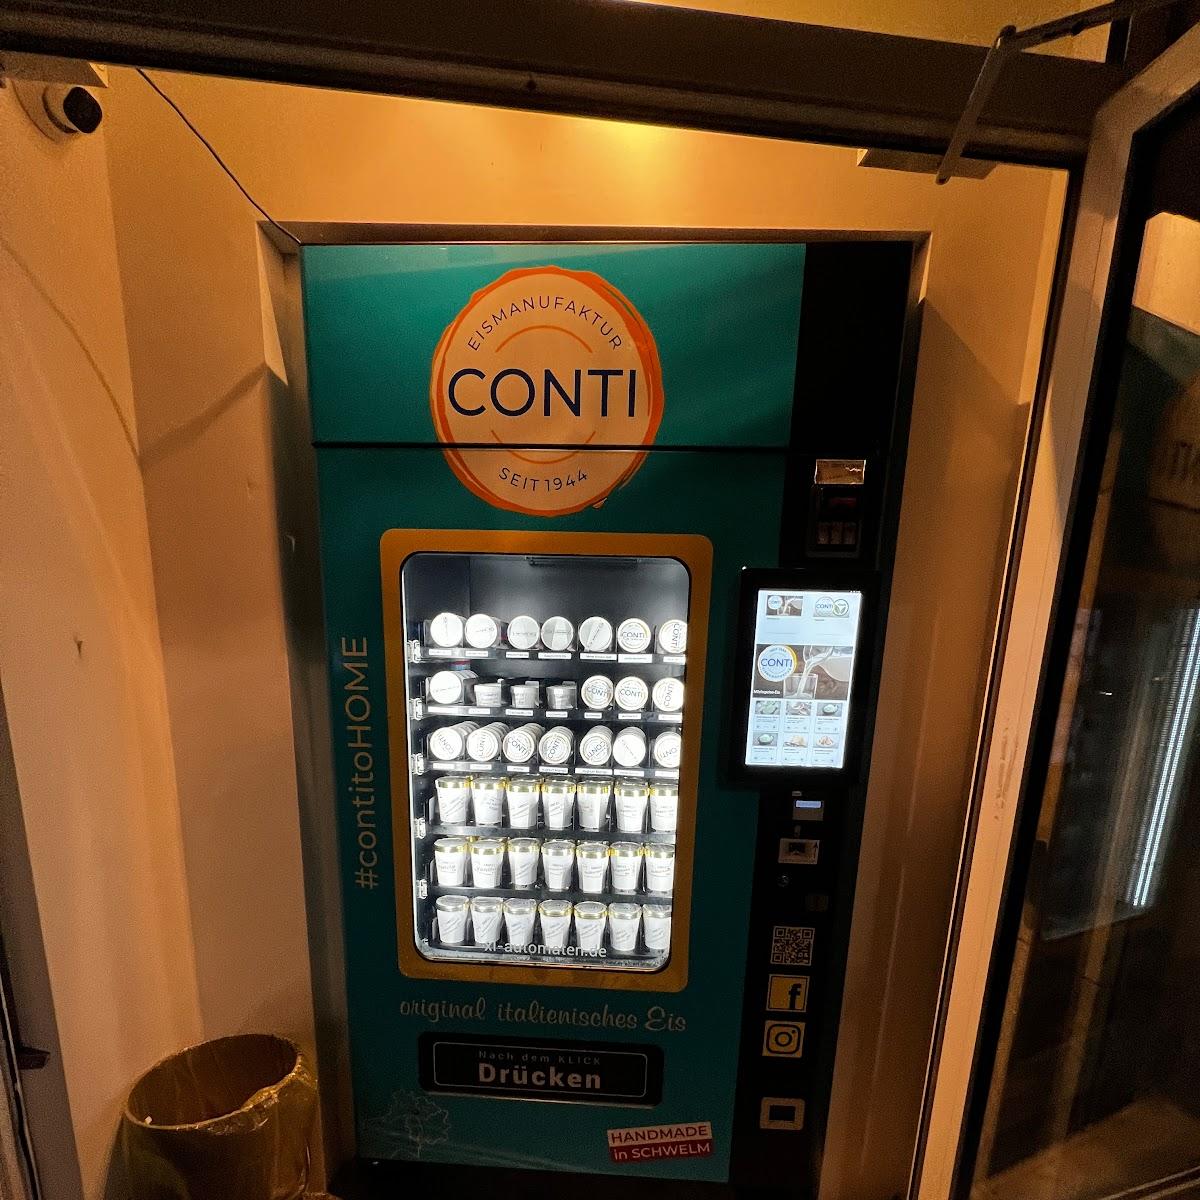 Restaurant "Conti2Go Eisautomat" in Schwelm